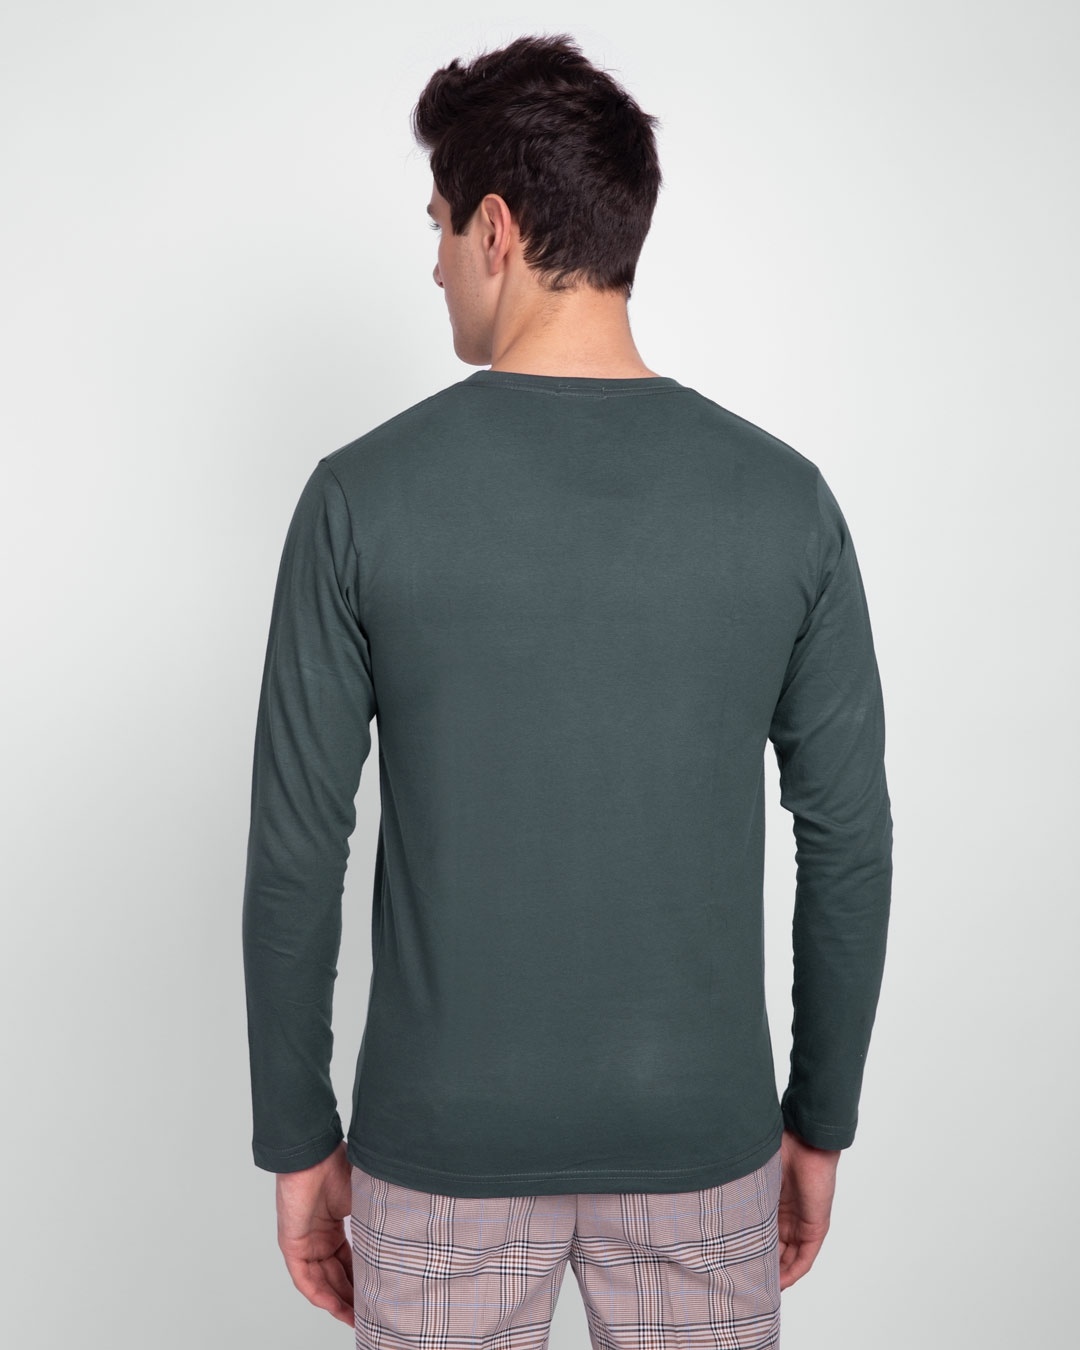 Shop Men's Plain Full Sleeve T-shirt Pack of 2(Red & Grey )